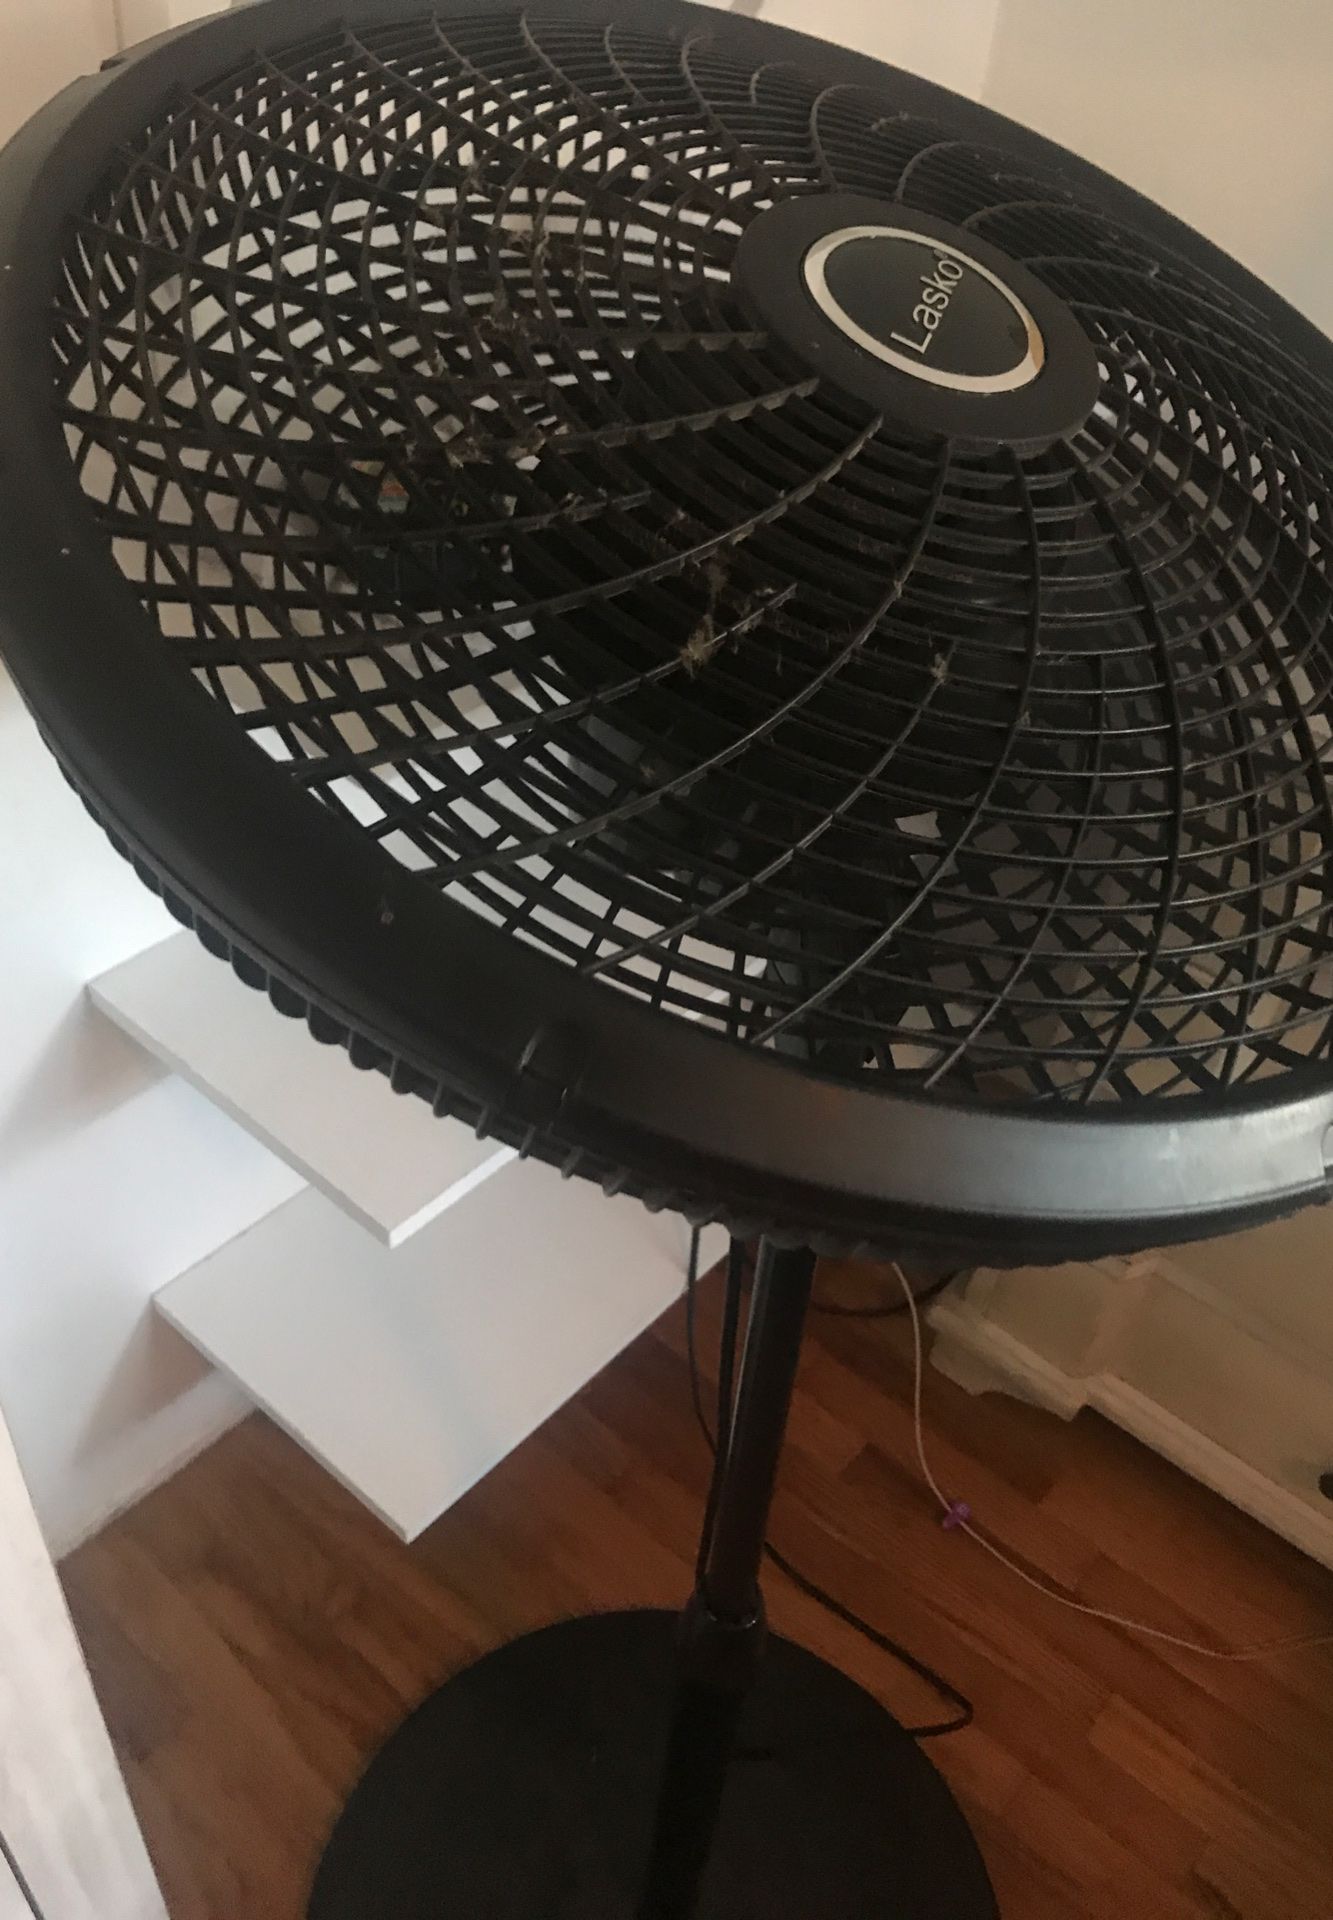 Lasko 18” pedestal oscillating fan